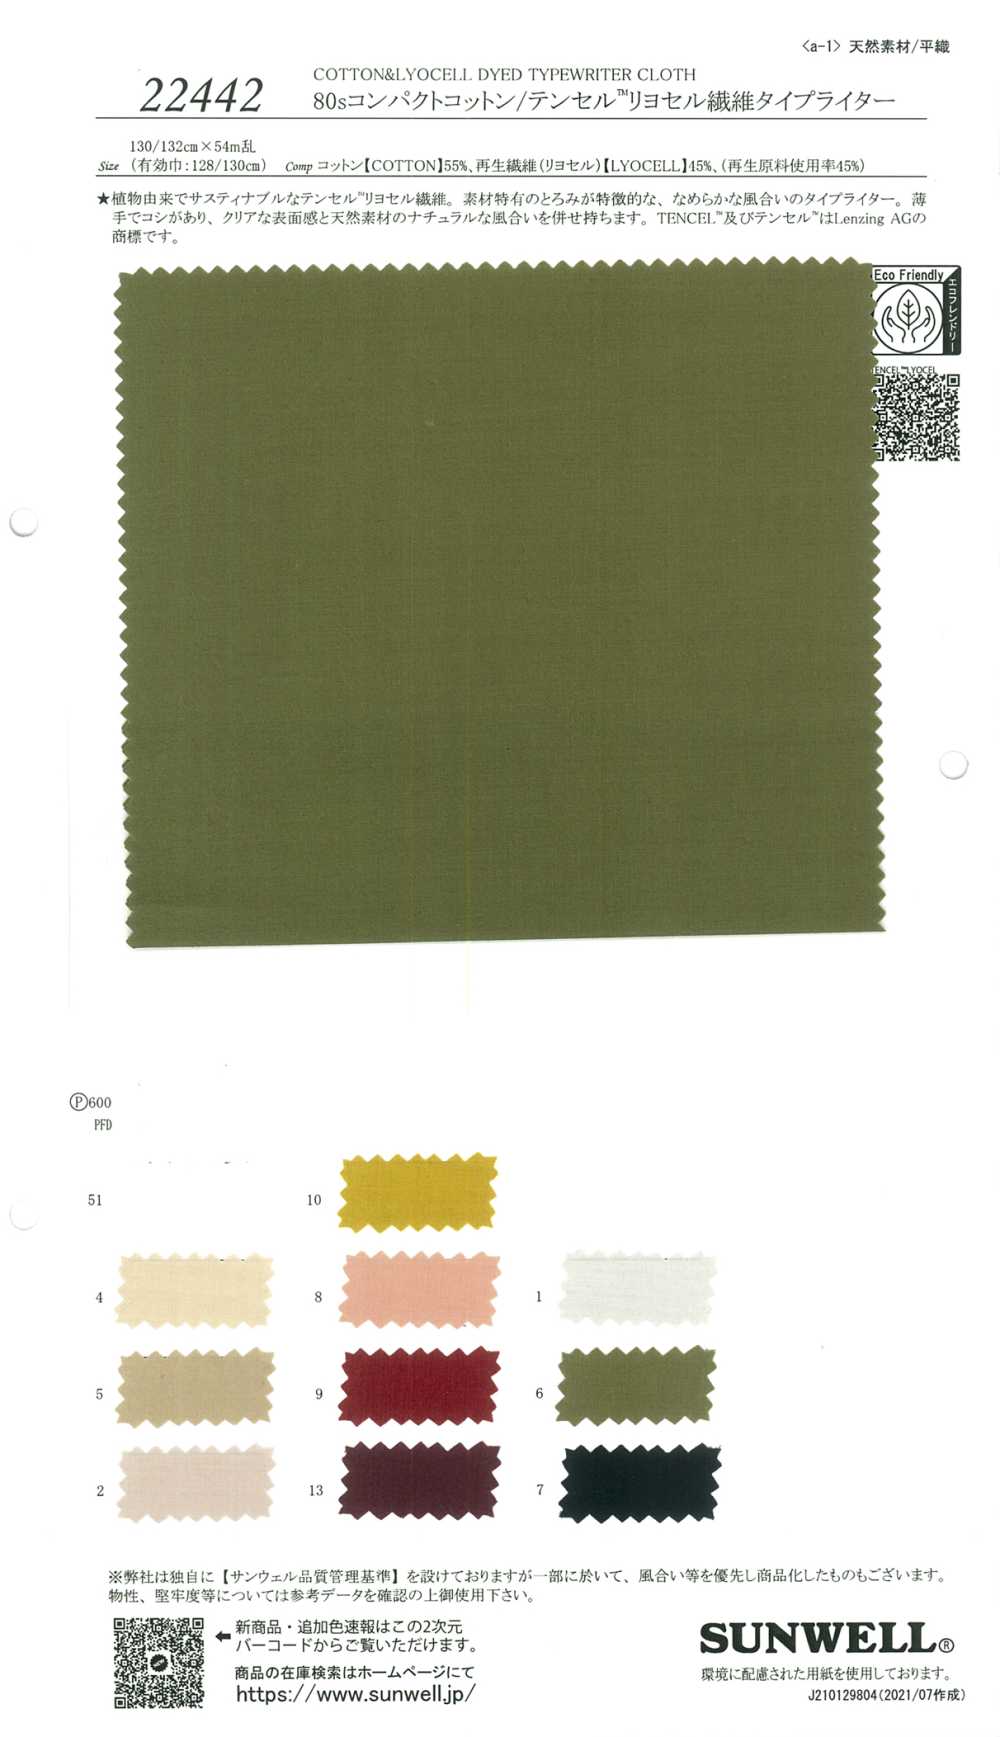 22442 [OUTLET] 80 Einzelfaden-Kompakt-Baumwoll-/Tencel (TM) Lyocell-Faser-Schreibmaschinentuch[Textilgewebe] SUNWELL